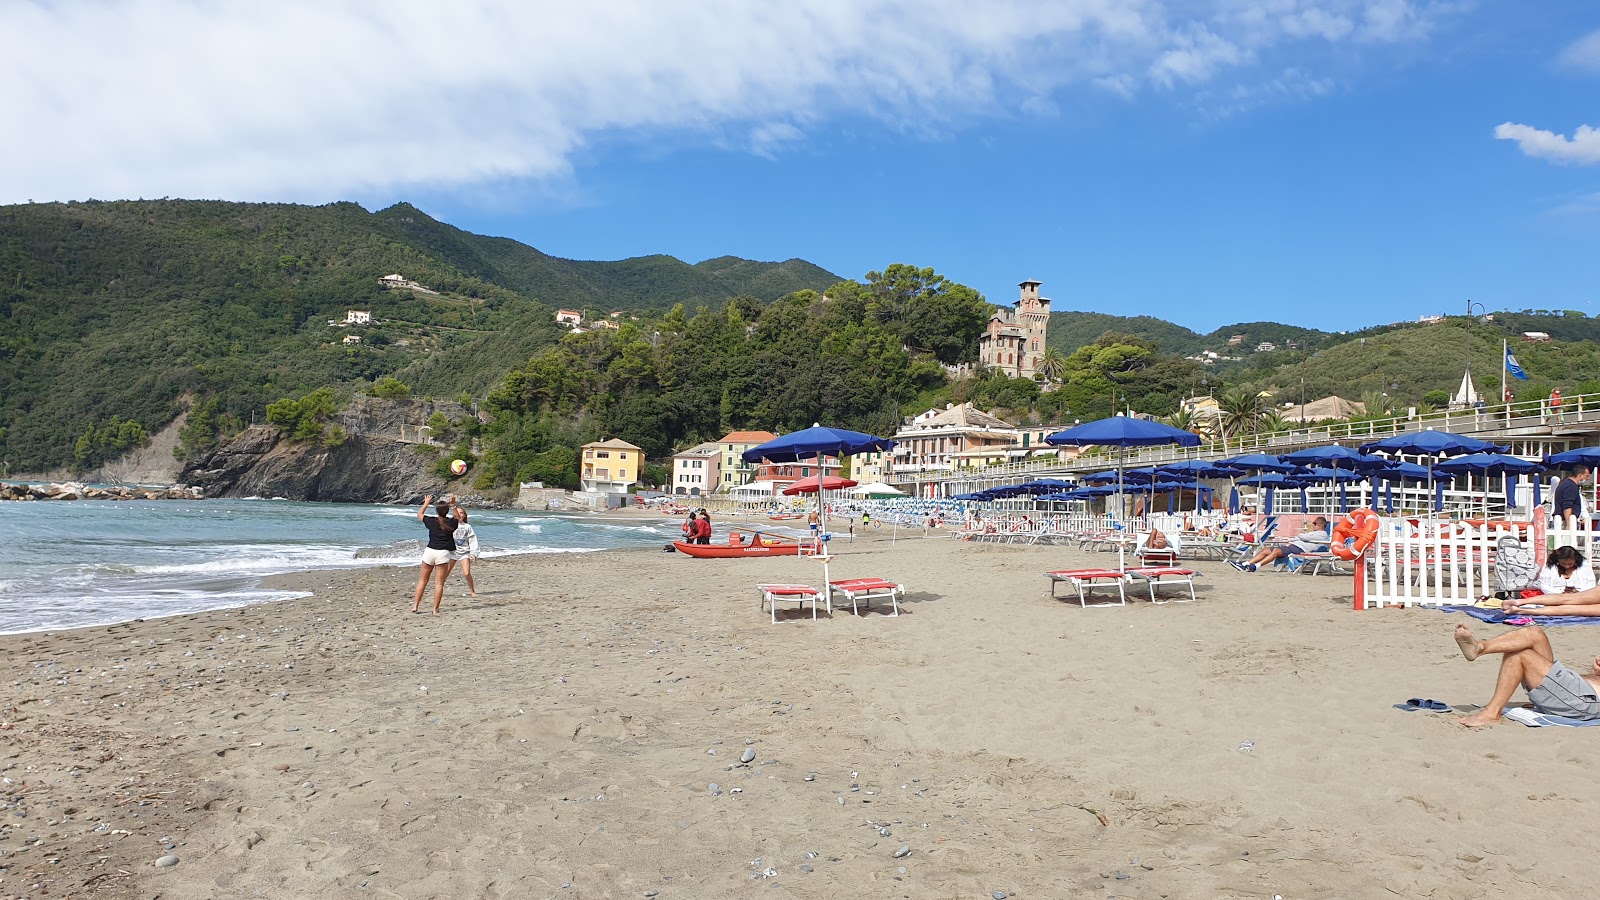 Foto von Spiaggia Moneglia - empfohlen für Familienreisende mit Kindern